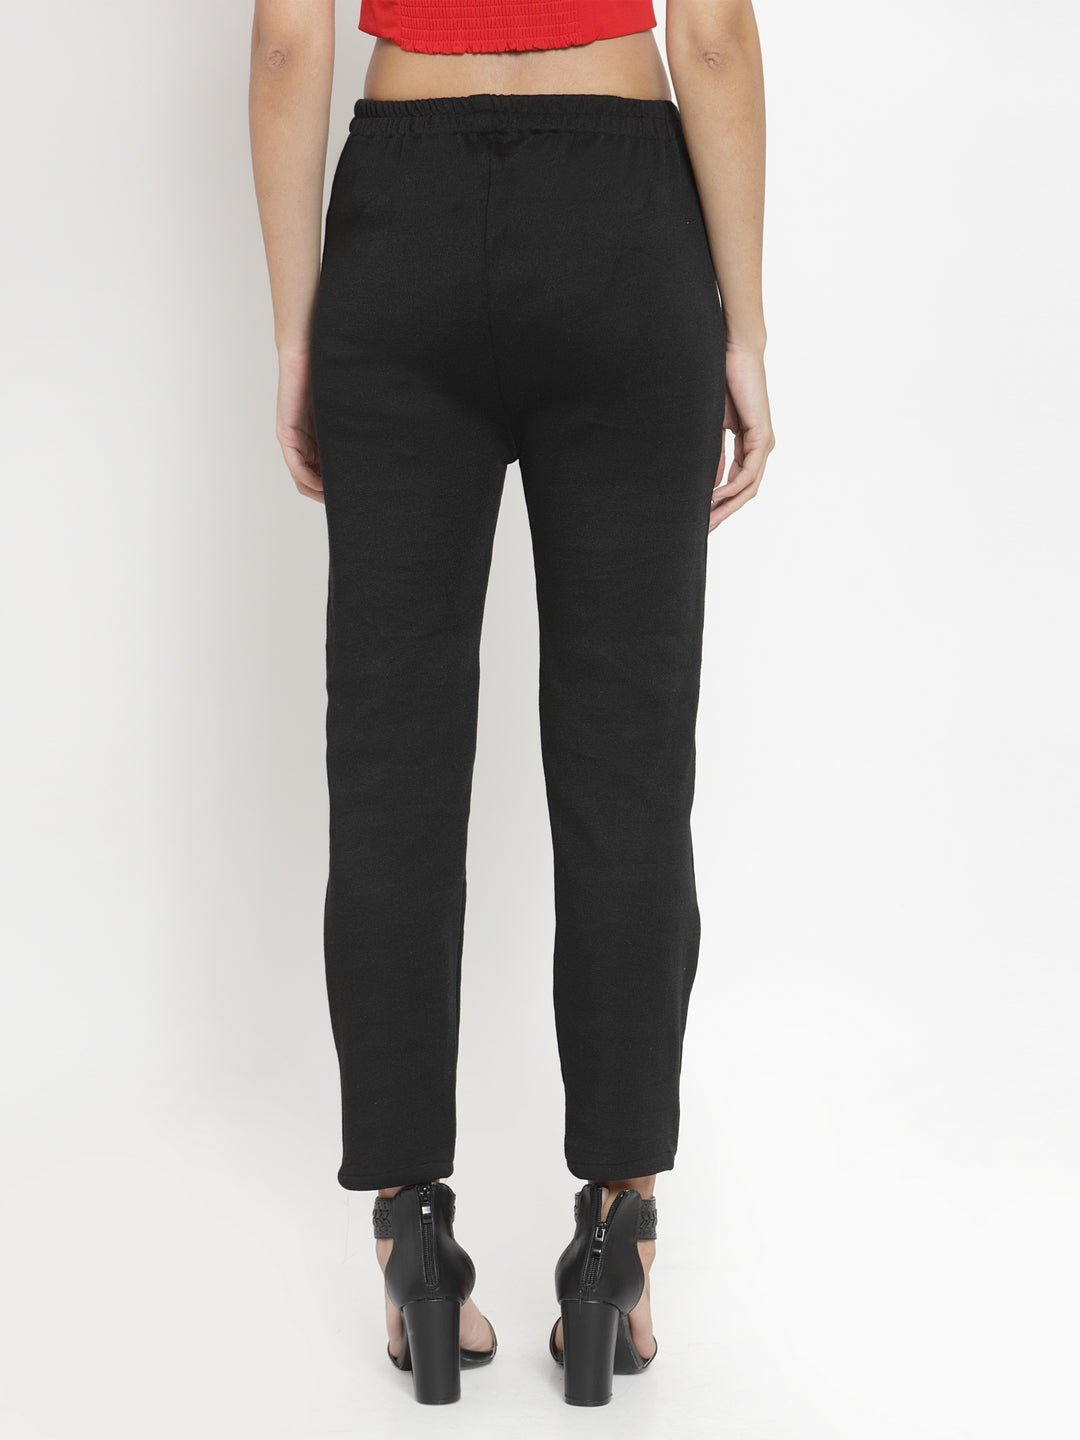 Clora Black Woolen Solid Pant